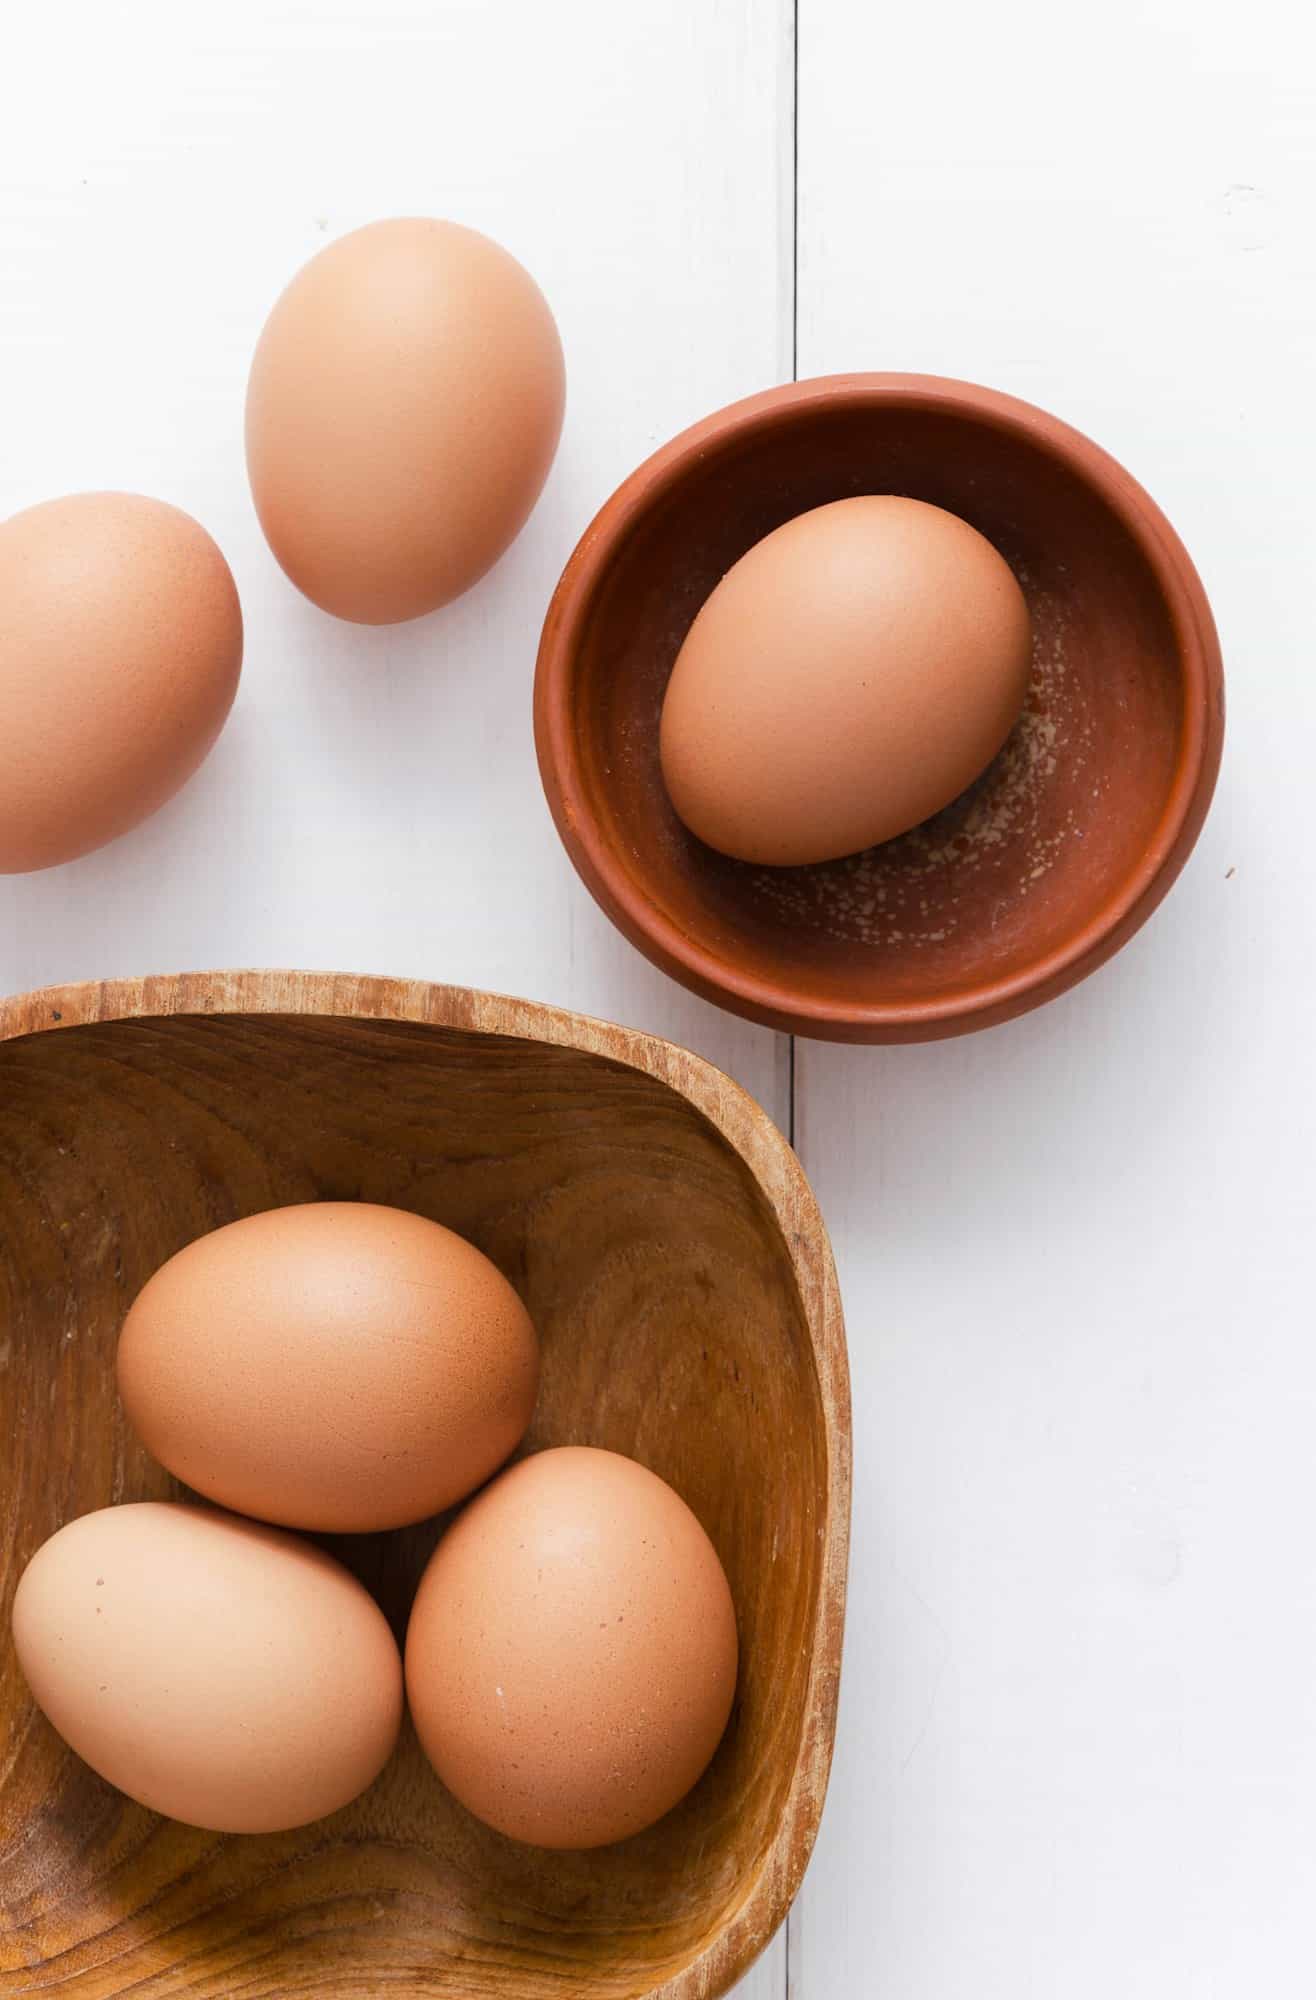 Αυγά: Είναι όντως κακό να τρώμε πολλά
